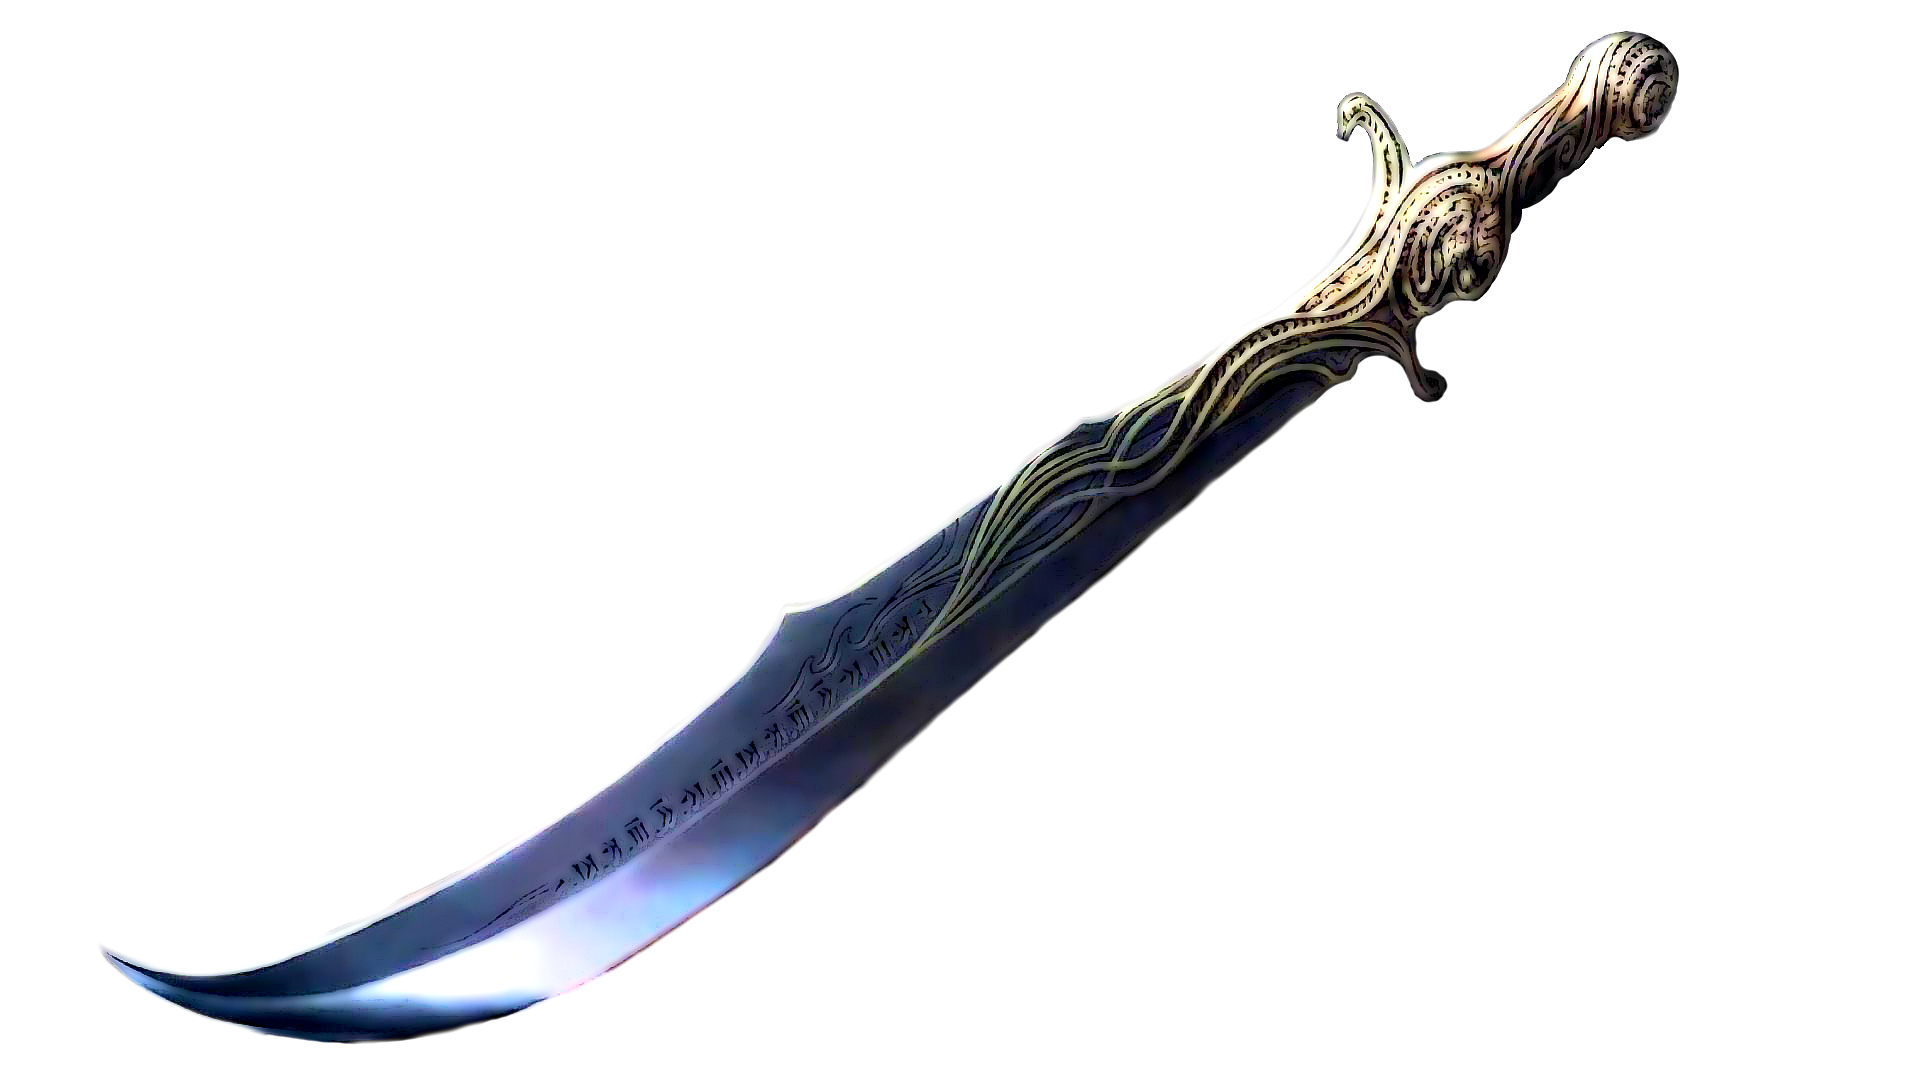 sword png